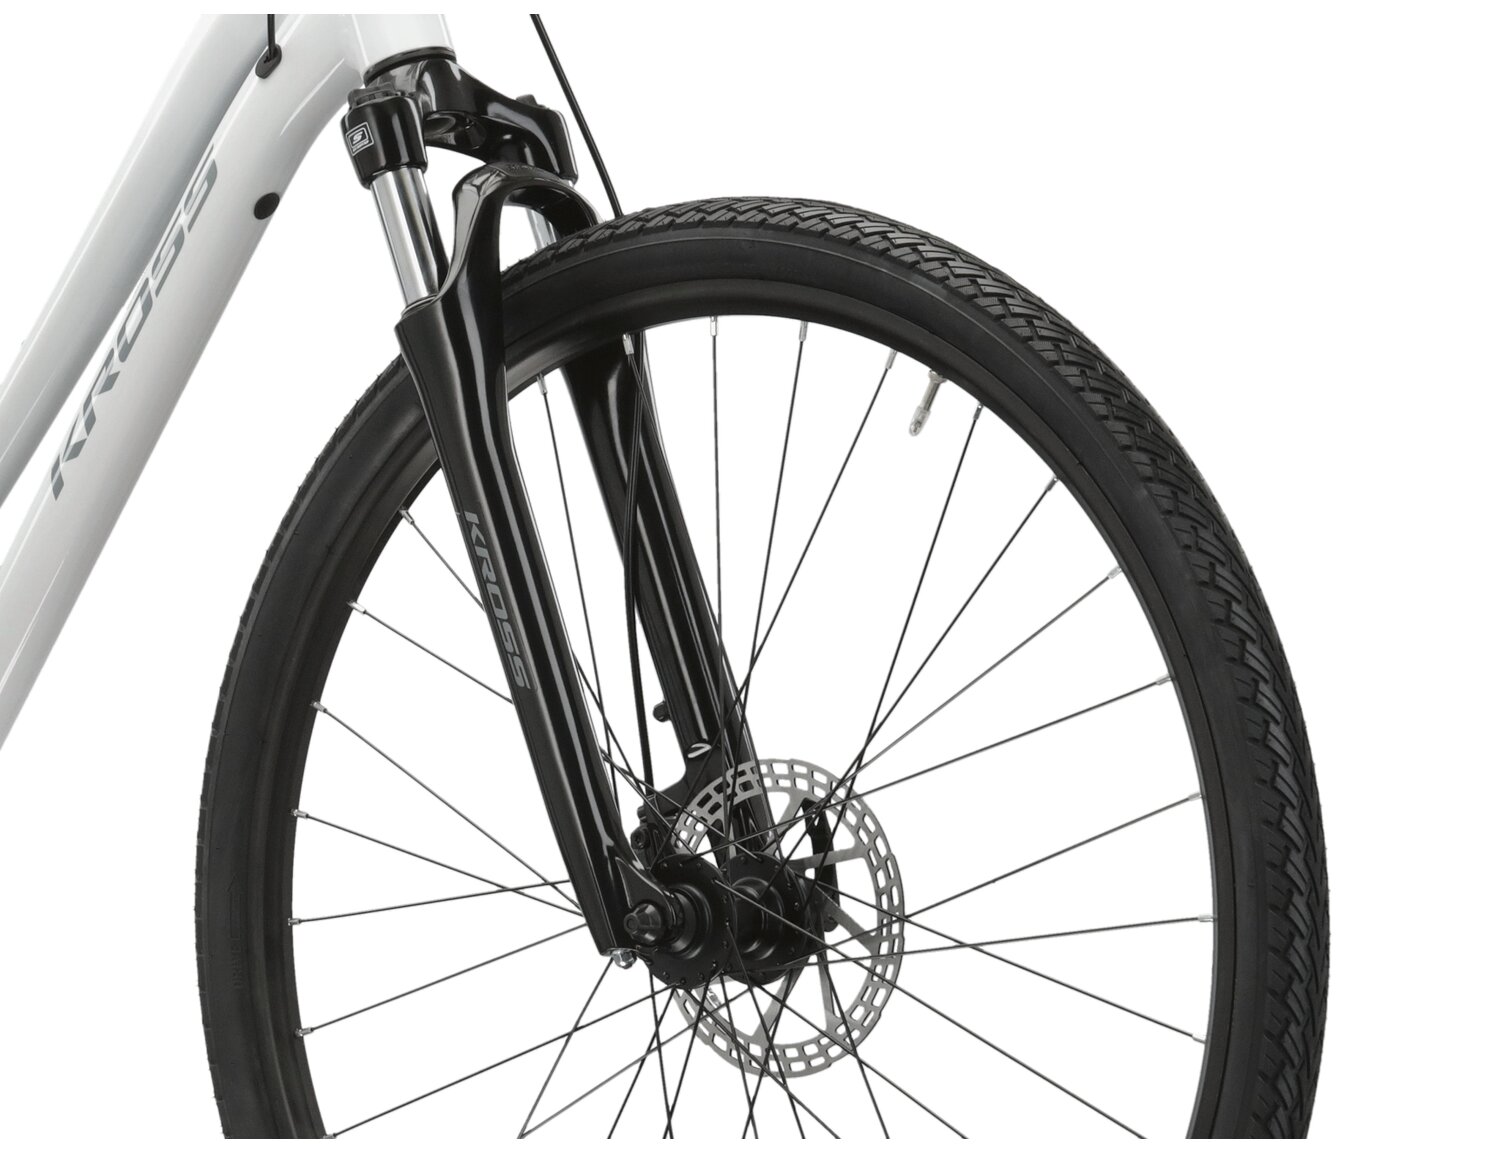 Aluminowa rama, amortyzowany widelec SR SUNTOUR NEX oraz opony Wanda w rowerze crossowym damskim KROSS Evado 3.0 